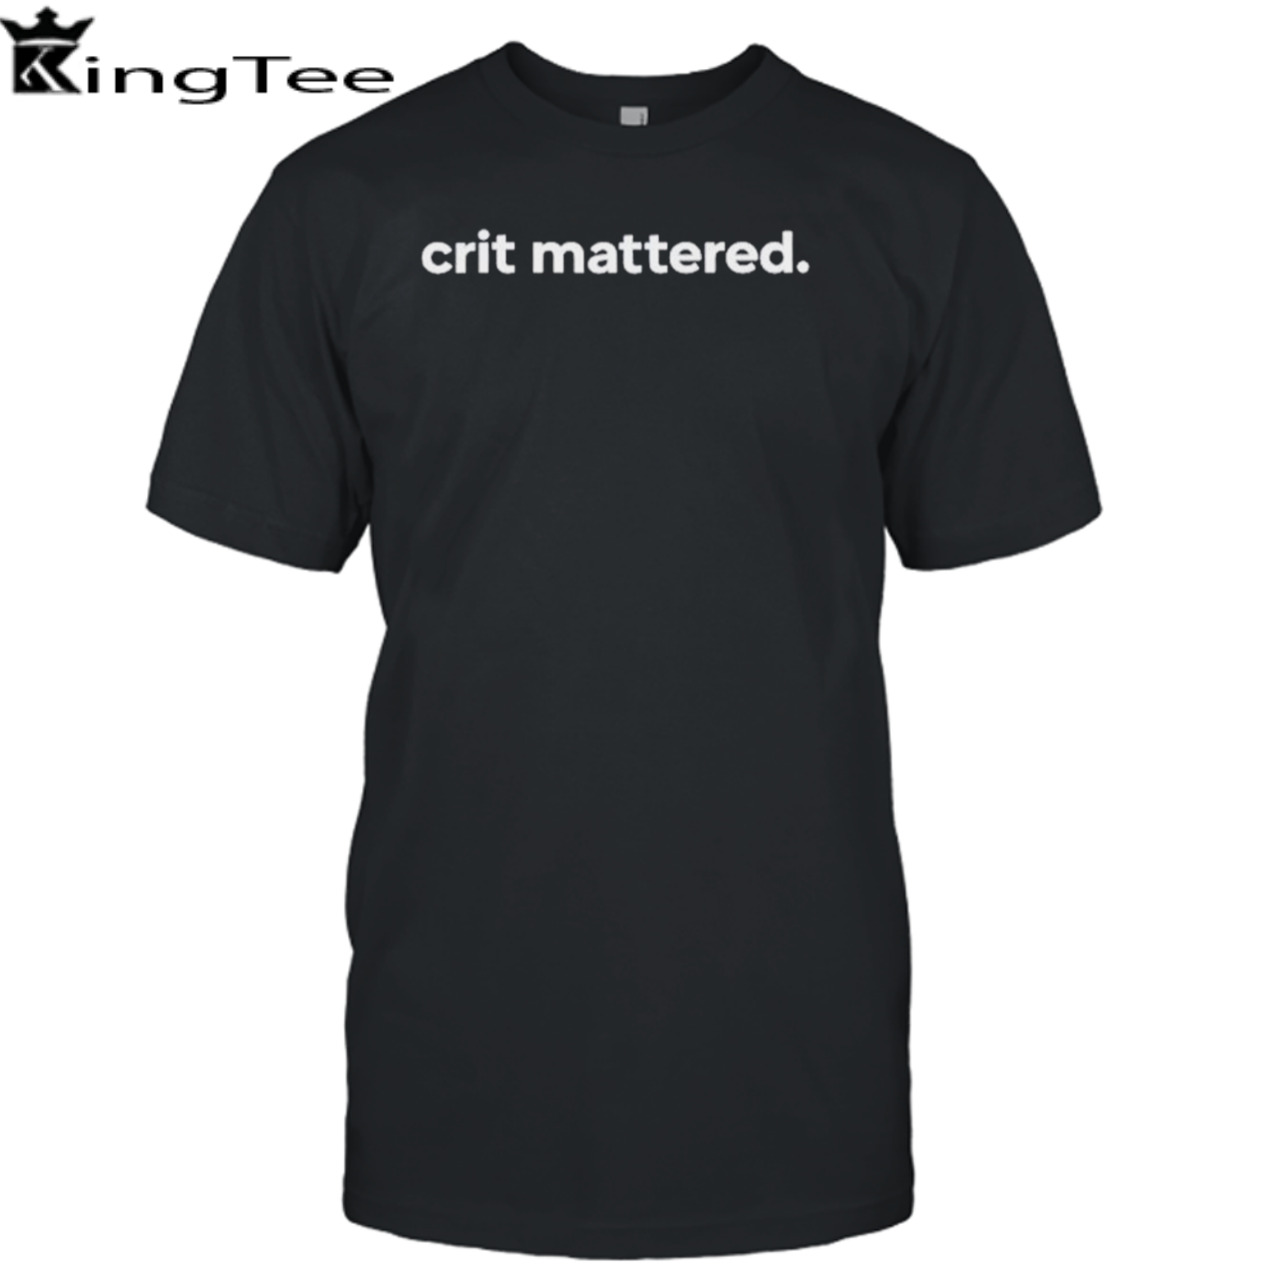 Crit mattered shirt